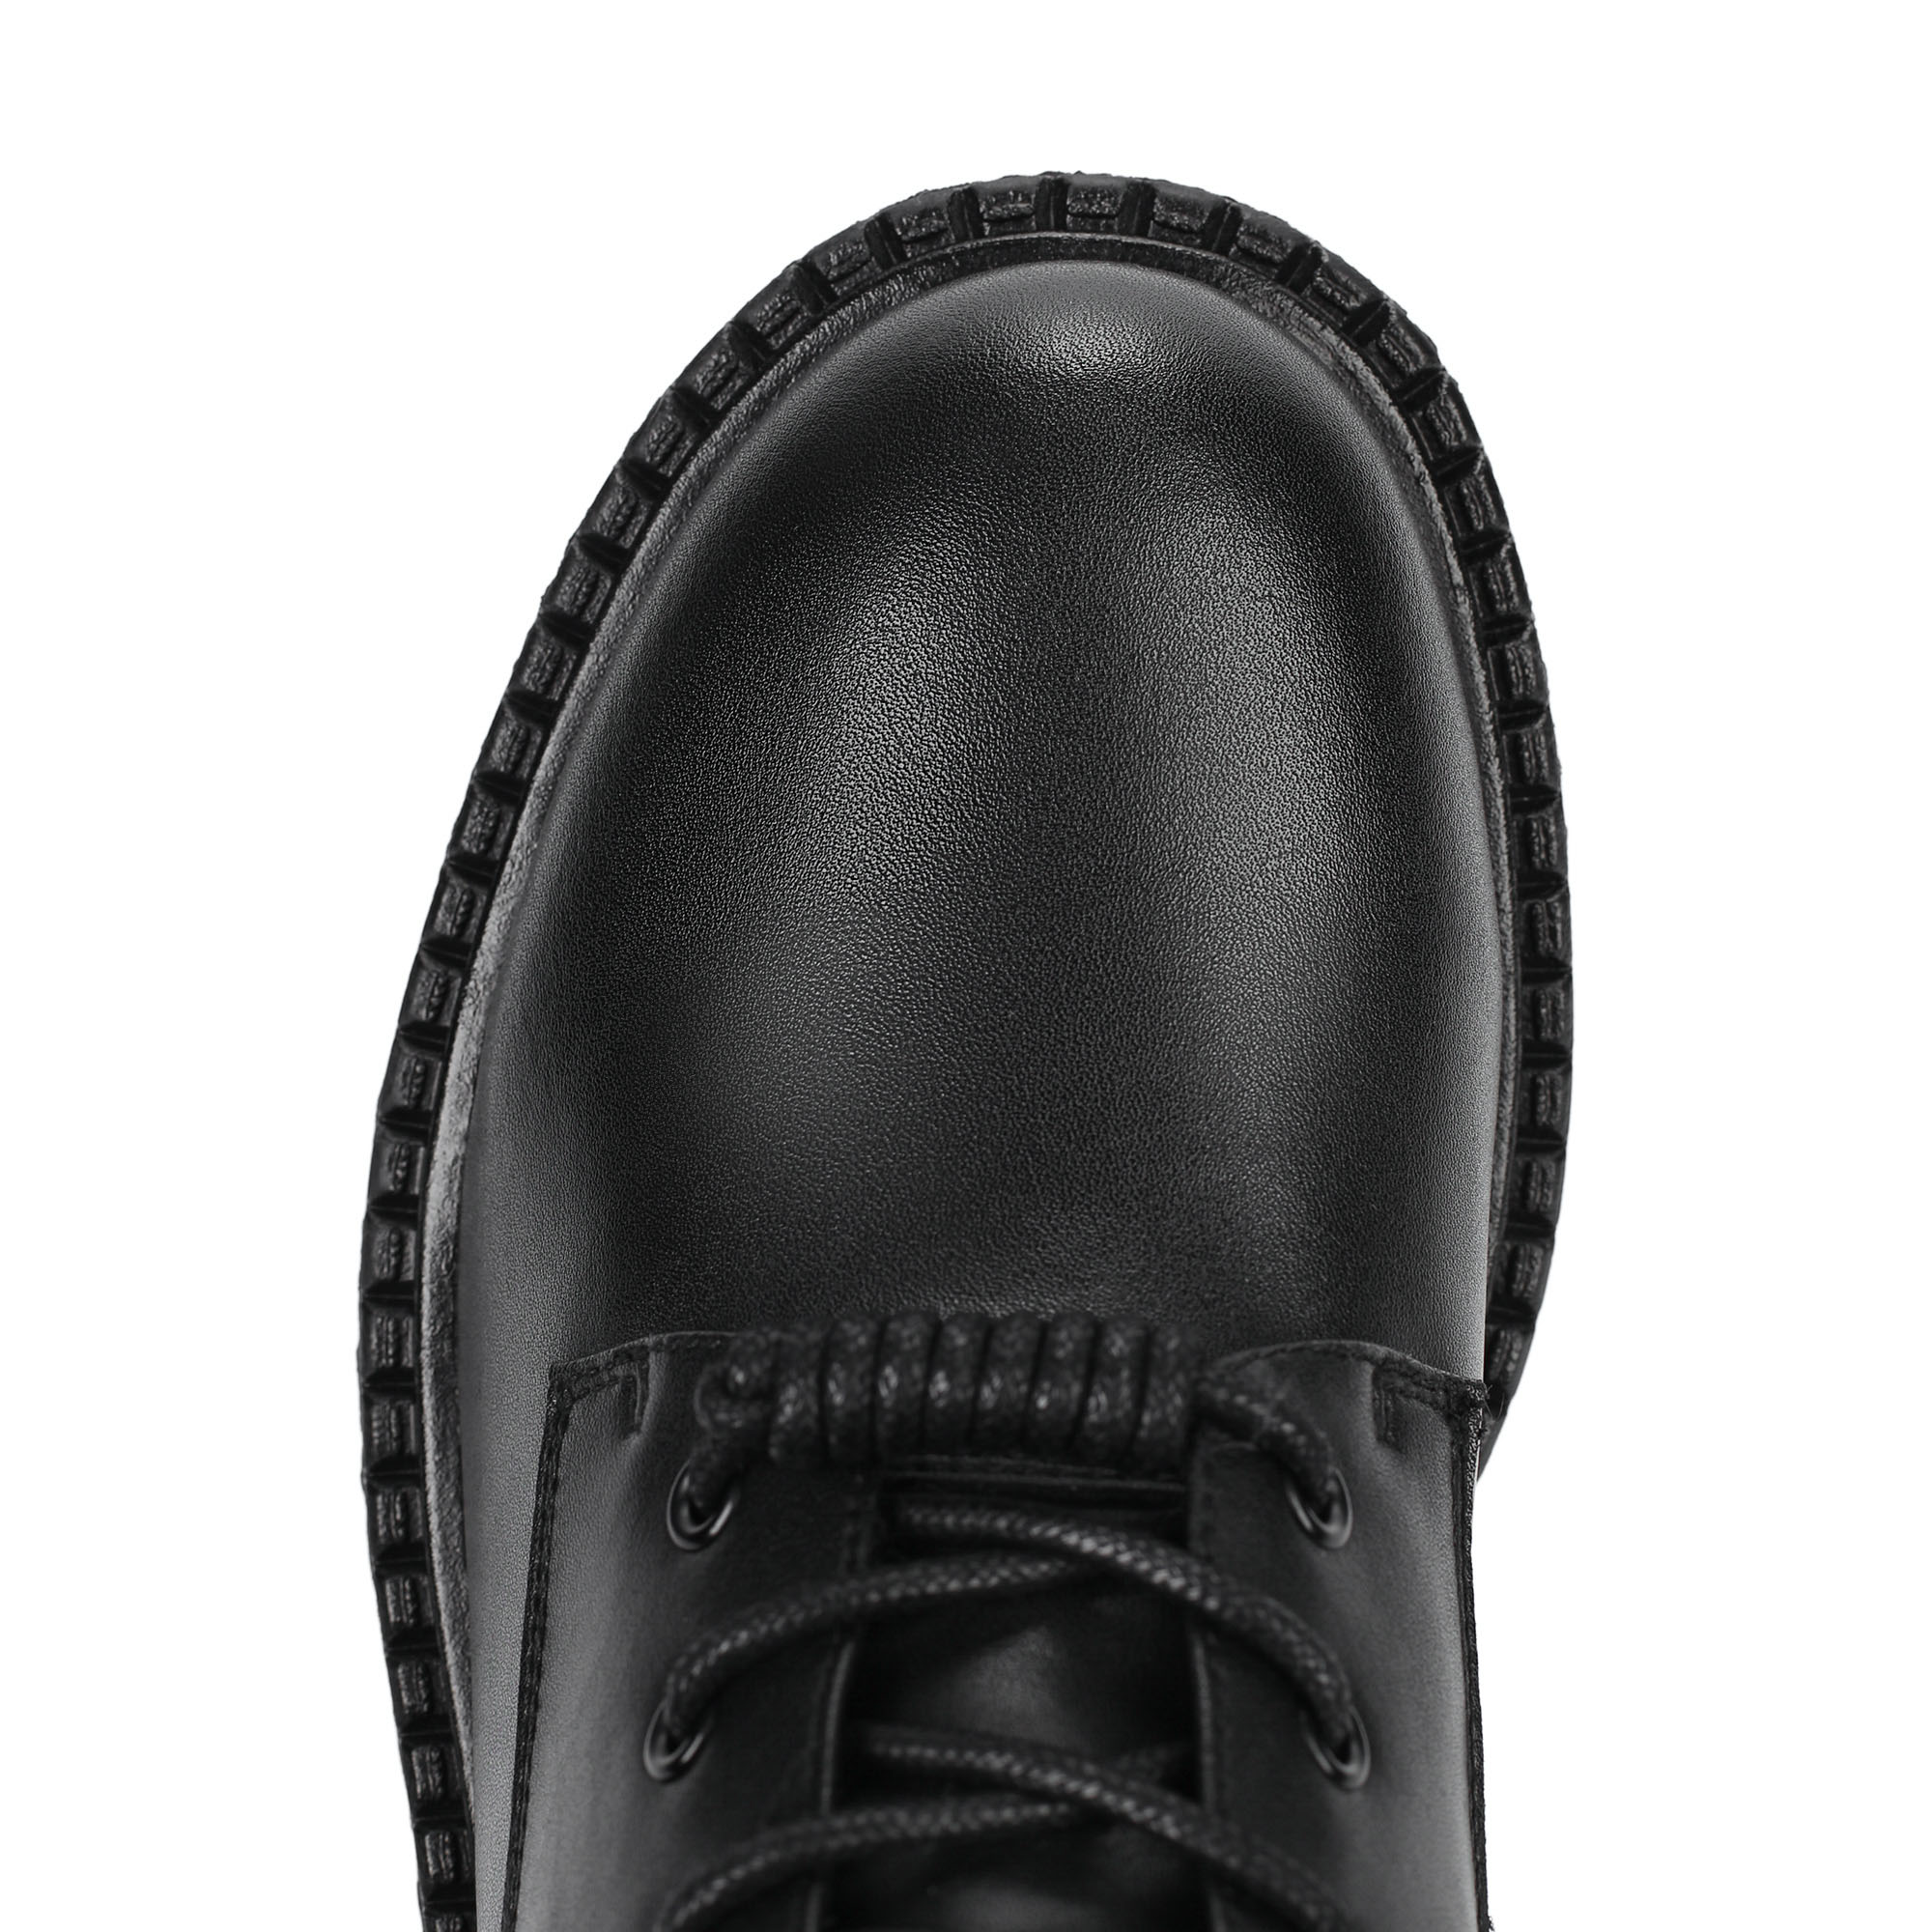 Ботинки Thomas Munz 195-040A-5602, цвет черный, размер 36 - фото 5